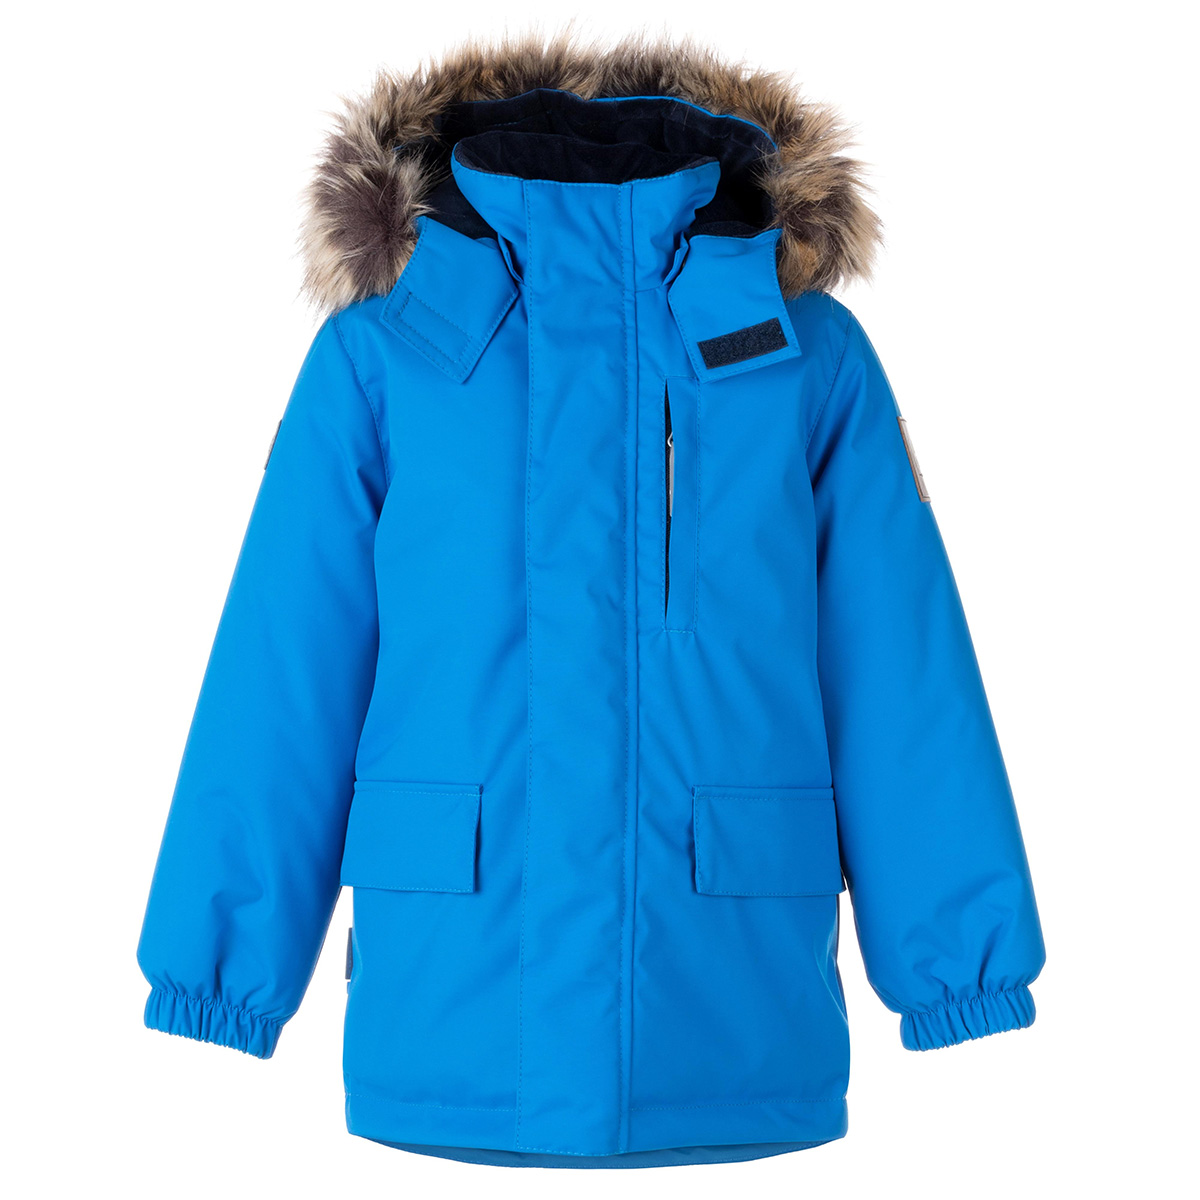 Парка детская KERRY Snow K23441, 658-светло-синий, 128 куртка quiksilver travis rice snow jacket for boy s insignia blue р 10